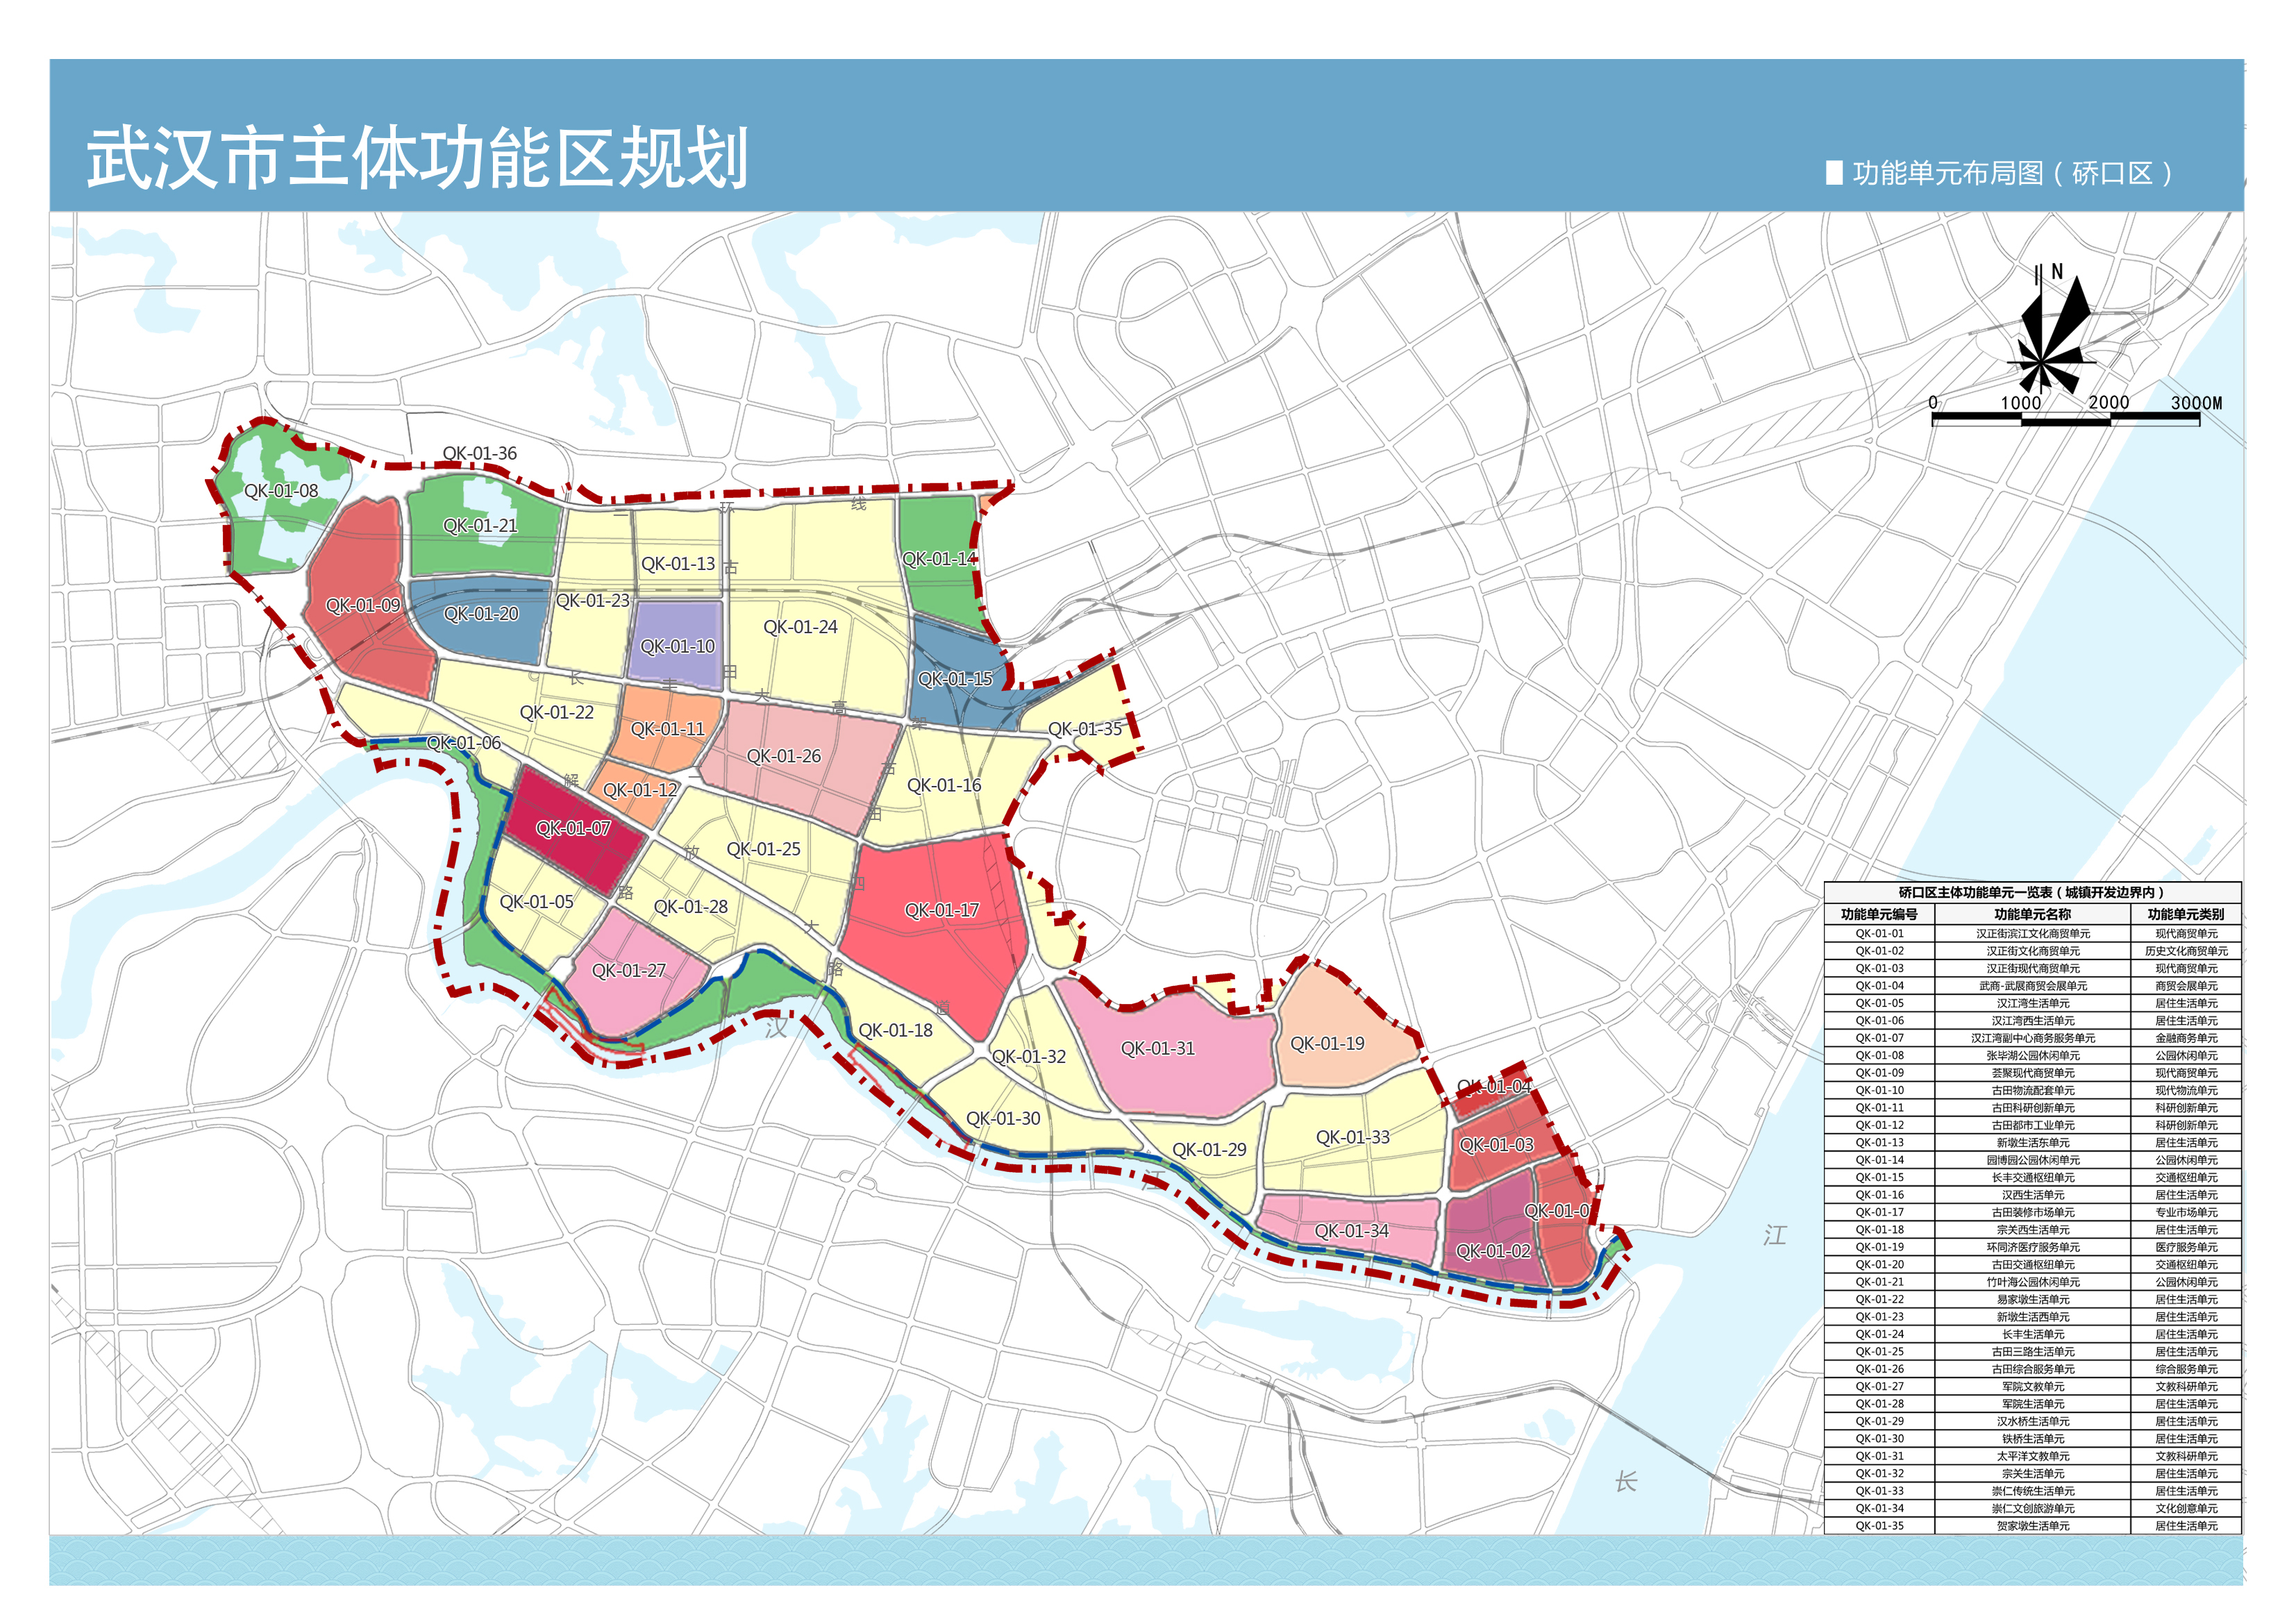 武汉市主体功能区规划今起征集意见每个区片将明确功能定位